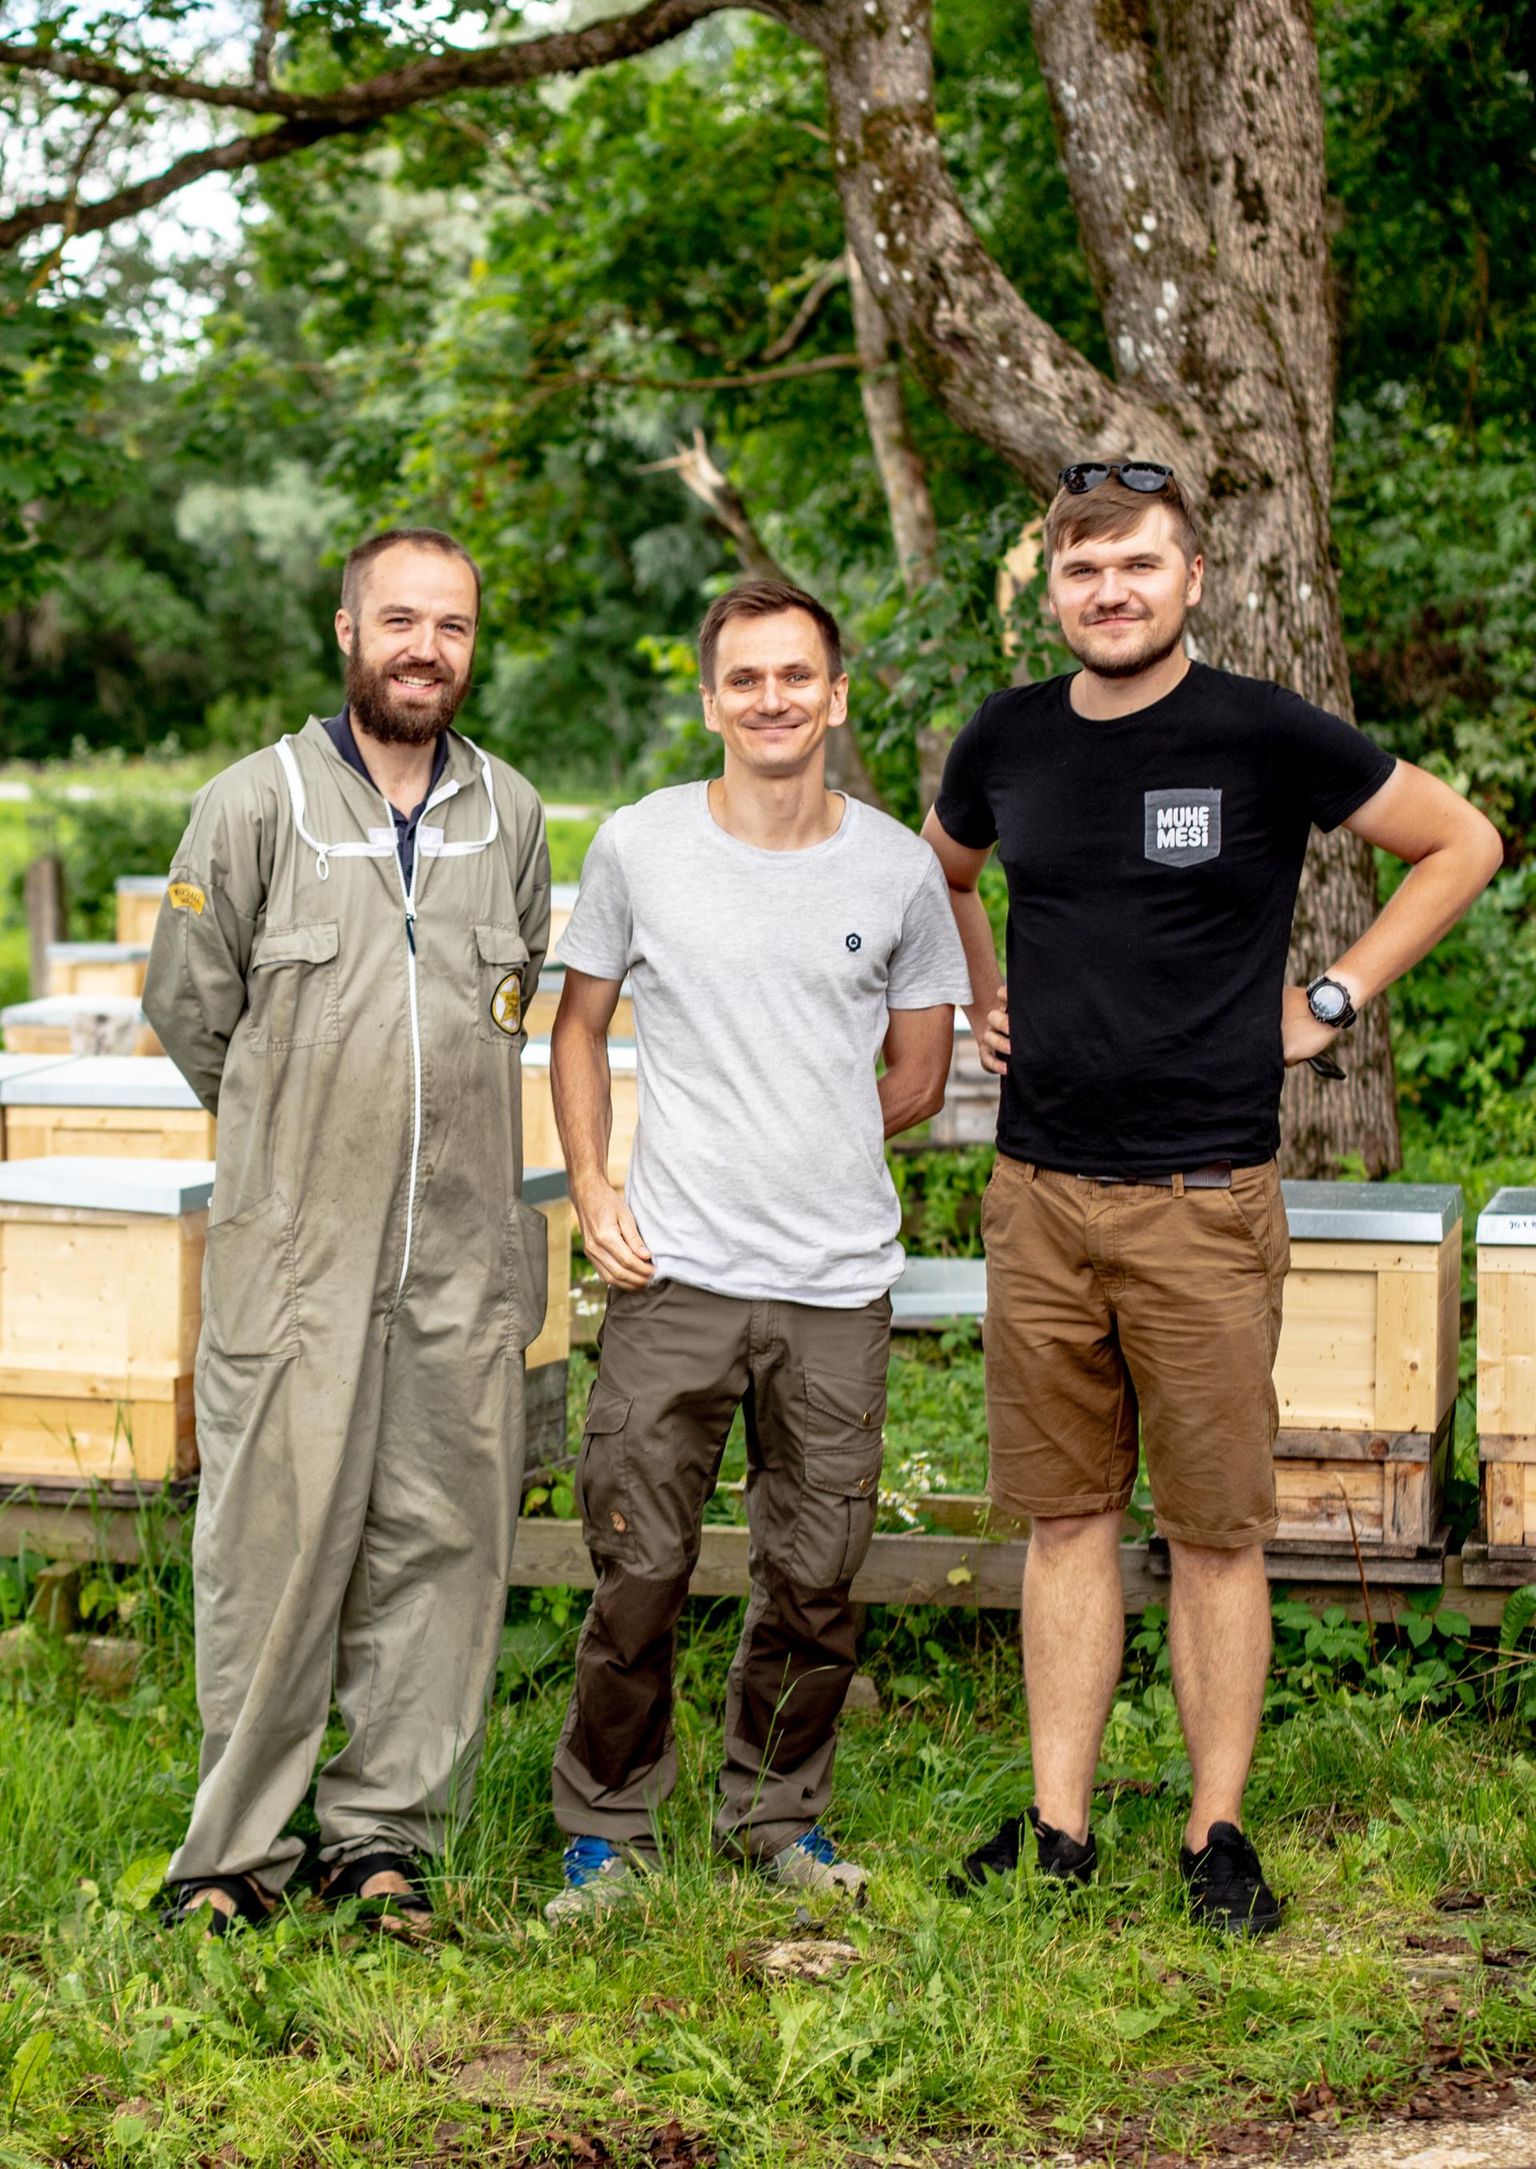 Väike-Maarjas asuv meetootmine on kolme mehe koostööprojekt. Mahemeega tegeleb peamiselt Harro Rannamets (keskel), tavatoomisega Mart Kullamaa (vasakul) ja Sander Sulane.